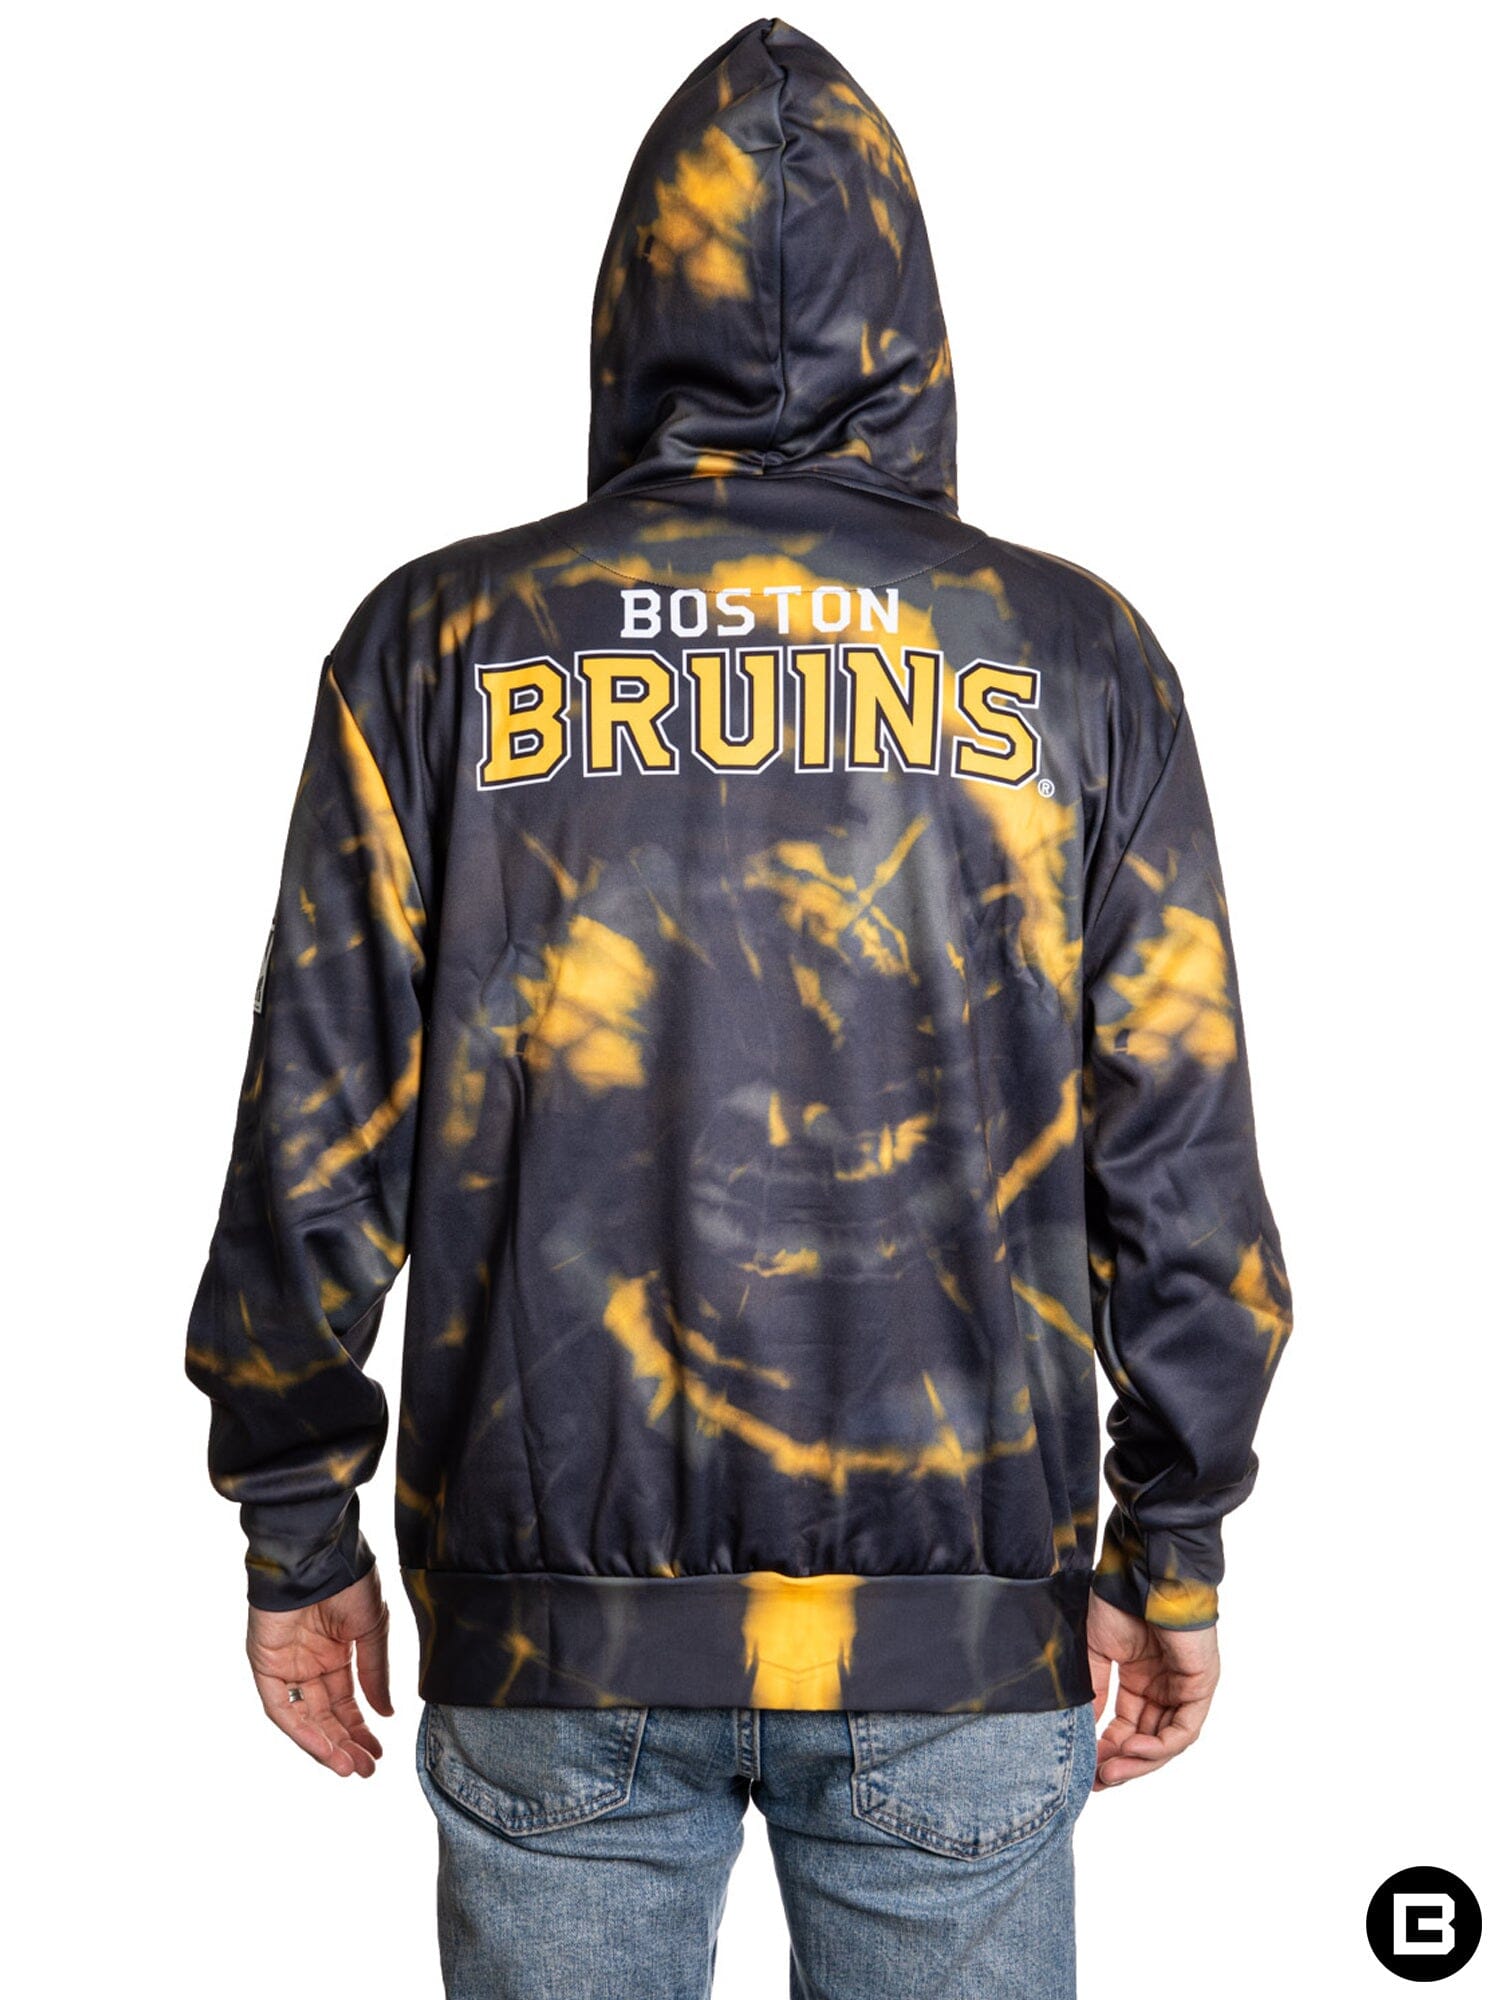 Boston Bruins Mens Hoodies & Sweatshirts